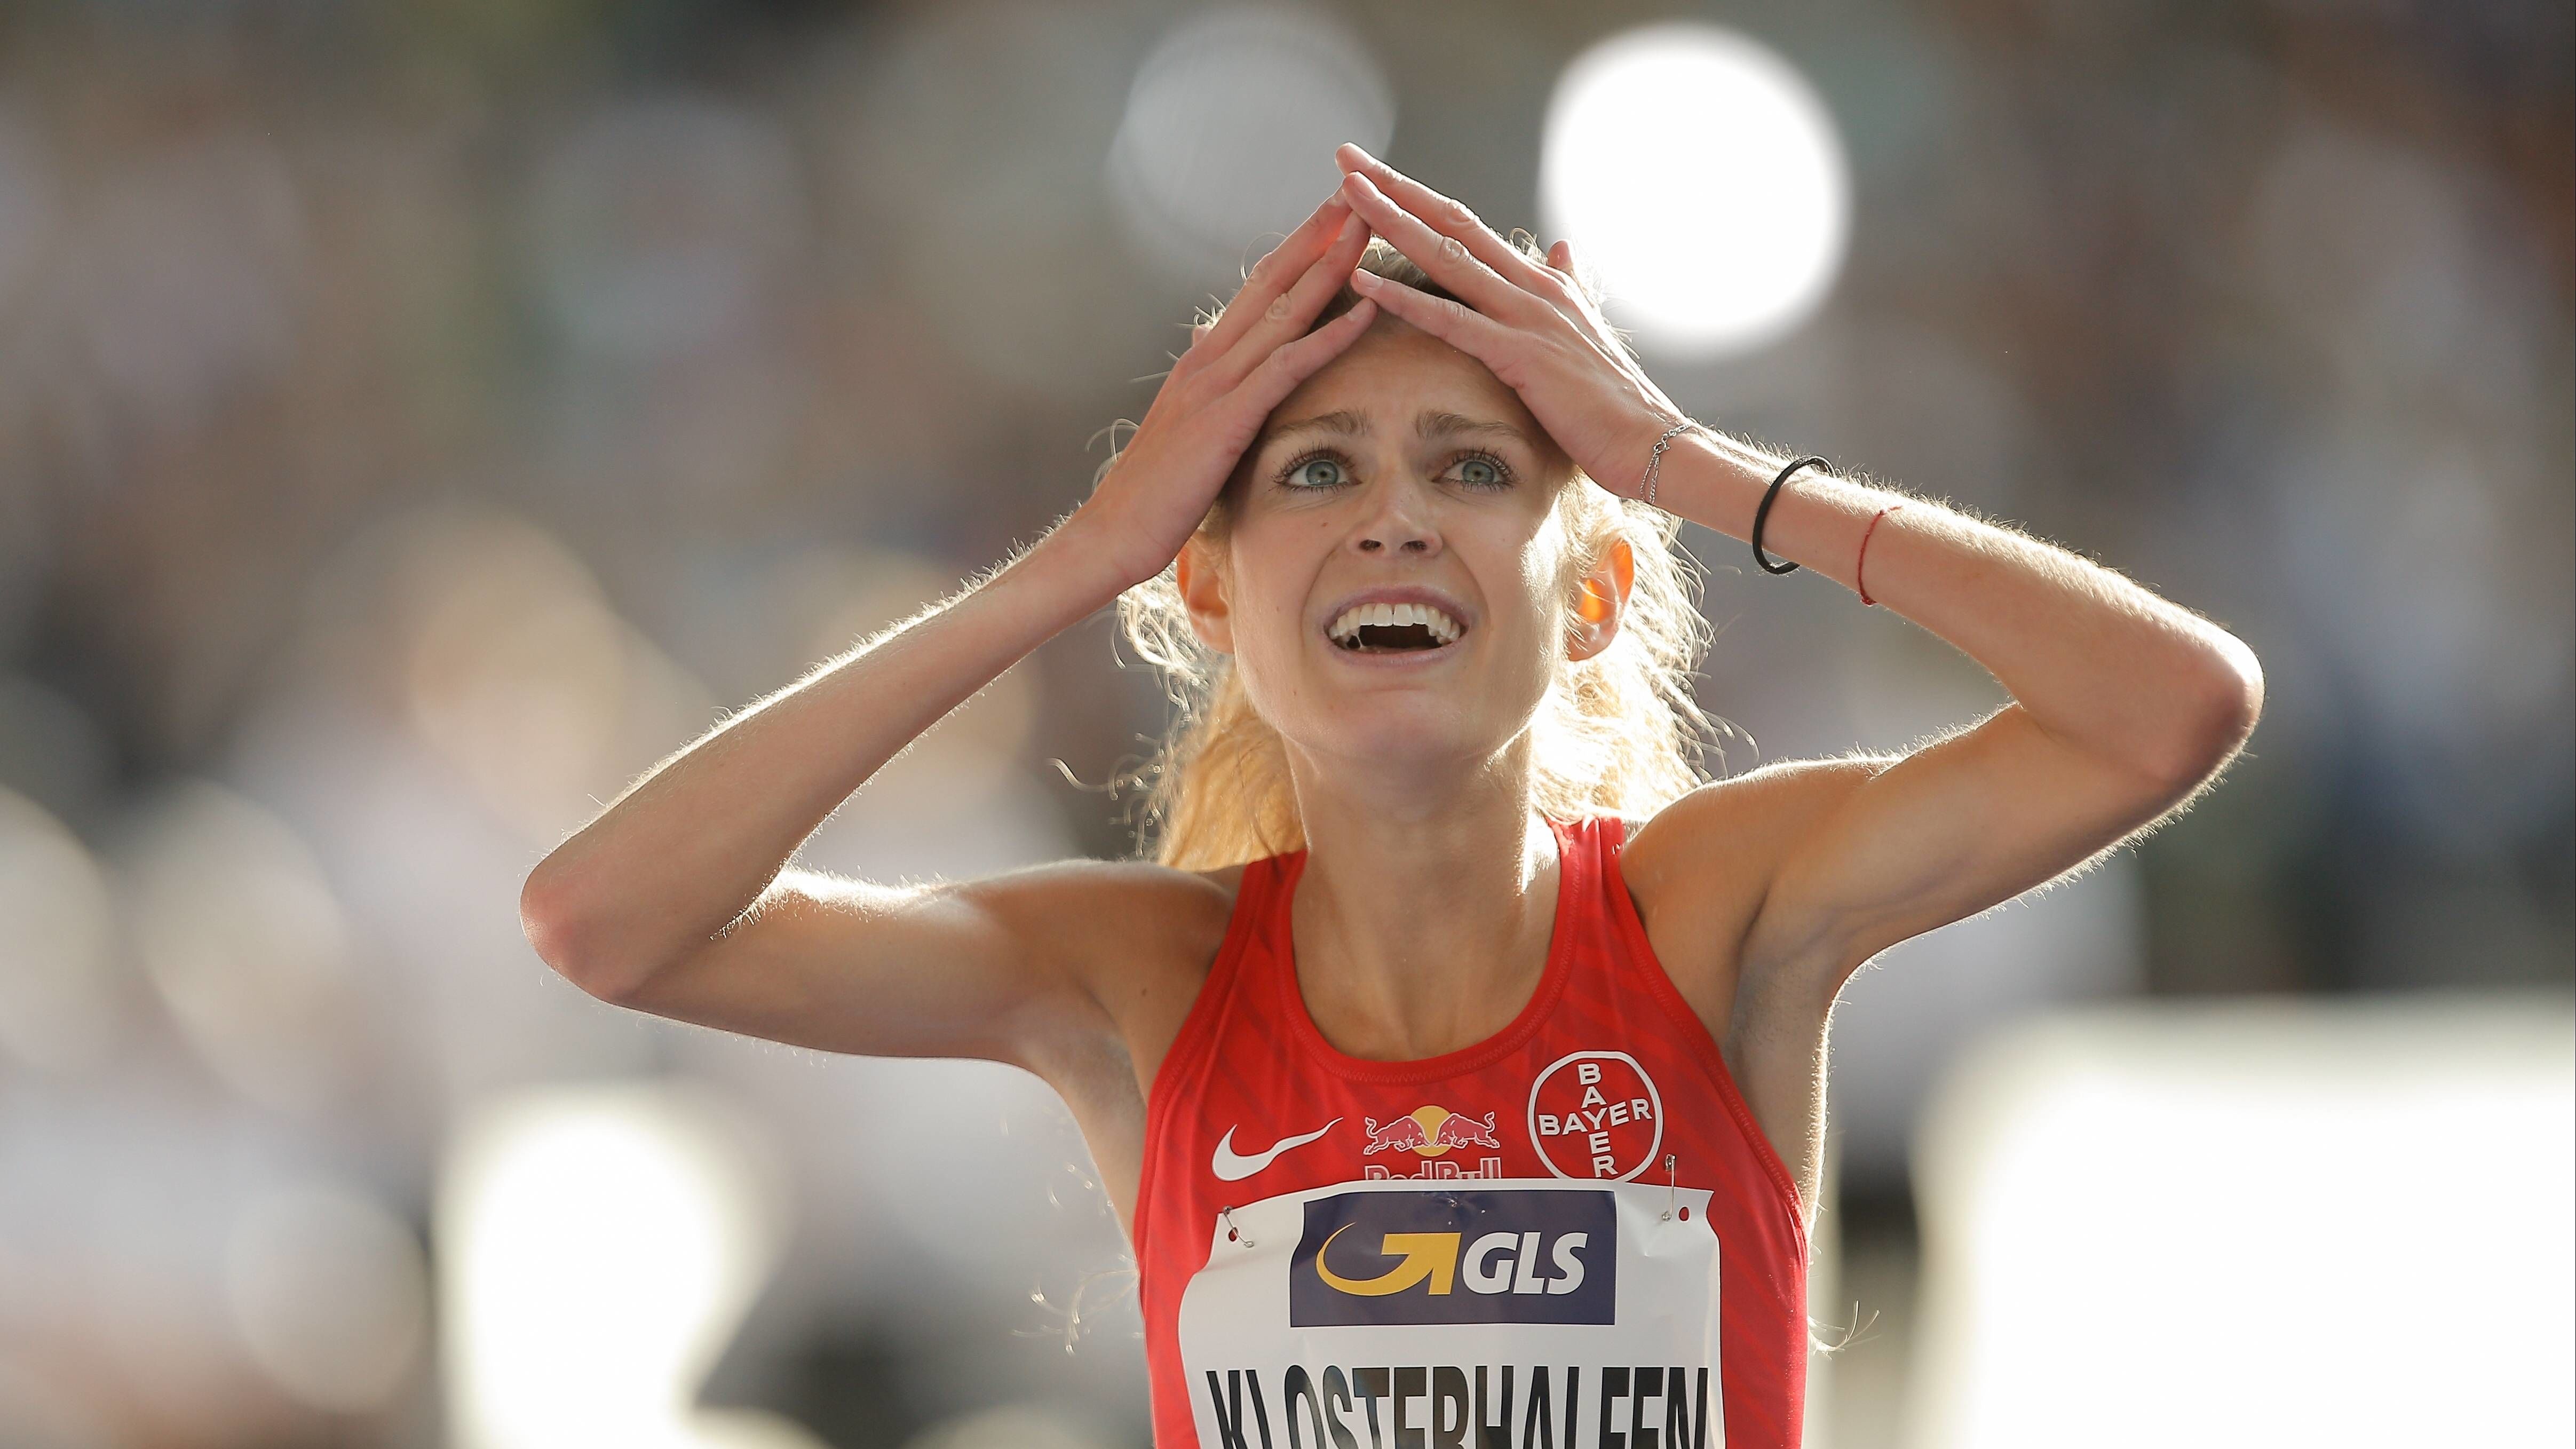 Klosterhalfen deutsche Meisterin mit Rekordzeit über 5000 Meter | Mehr